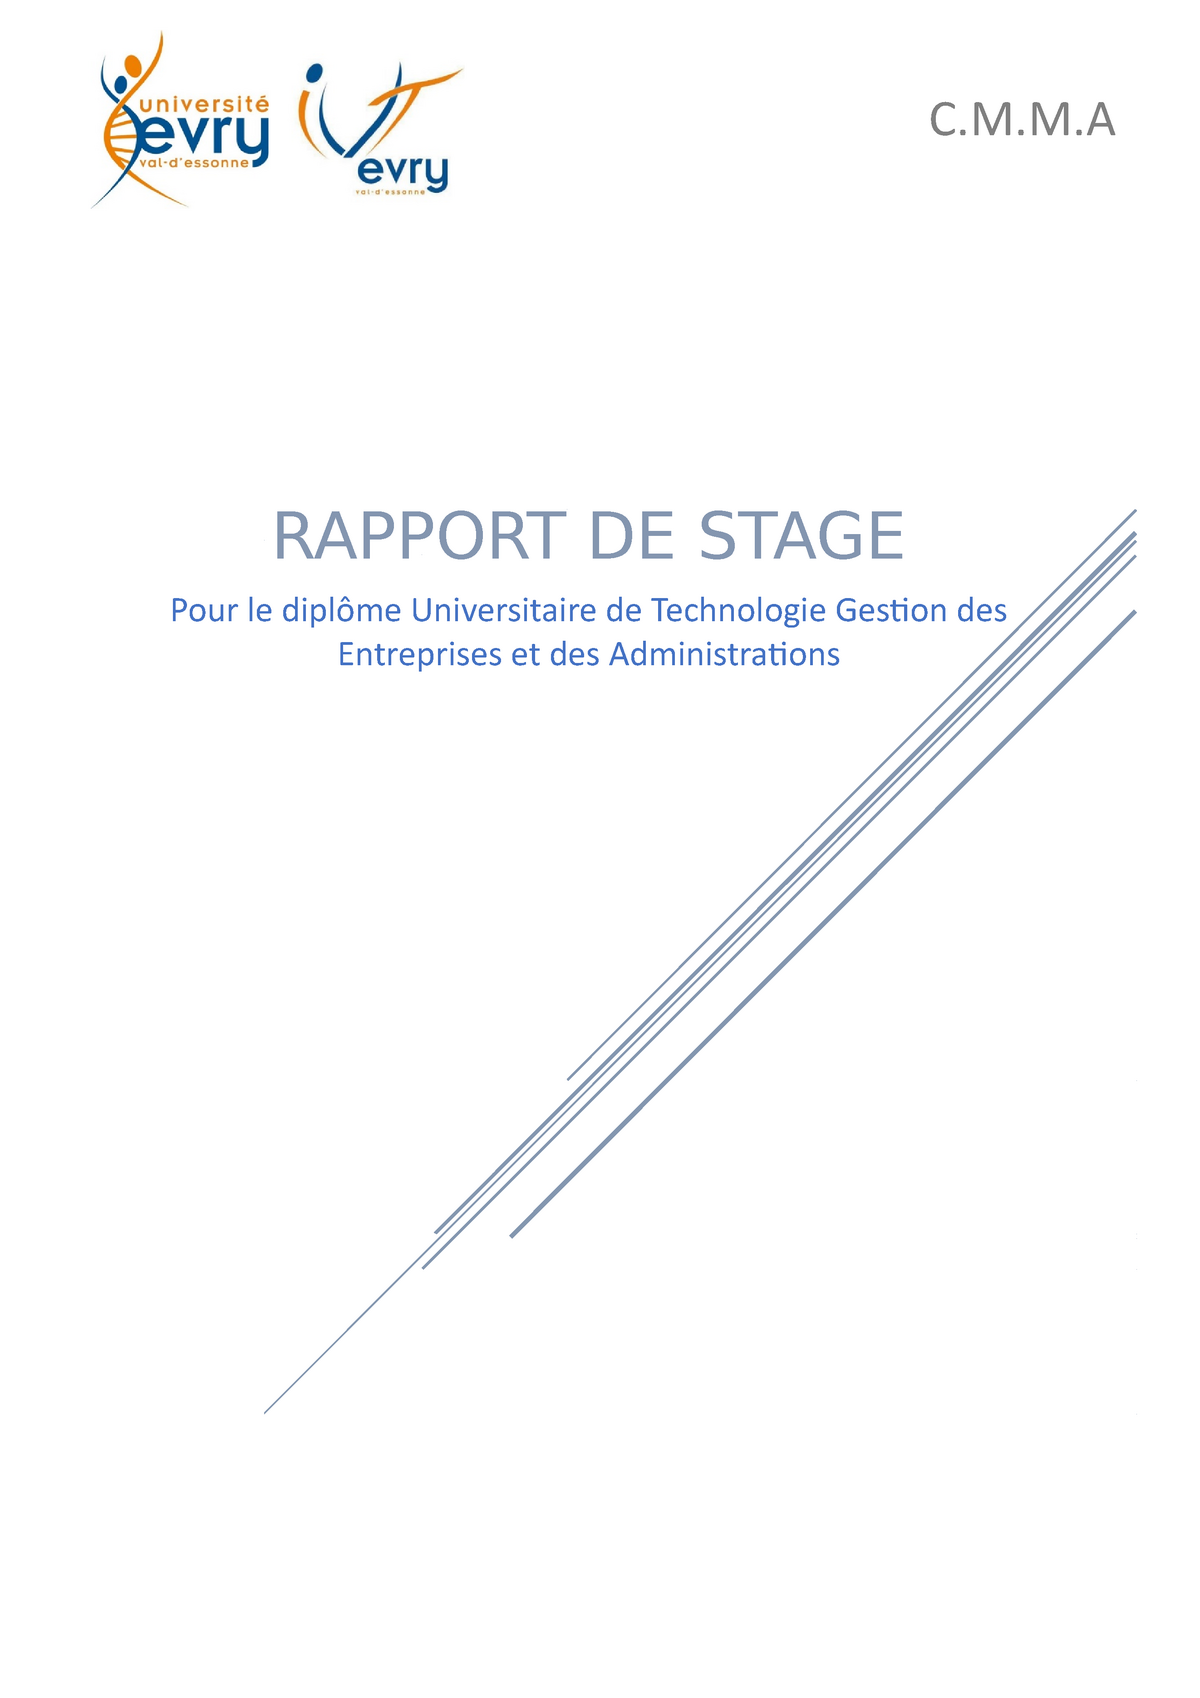 Rapport De Stage Comptabilite C M M Rapport De Stage Pour Le Diplome Universitaire De Technologie Studocu